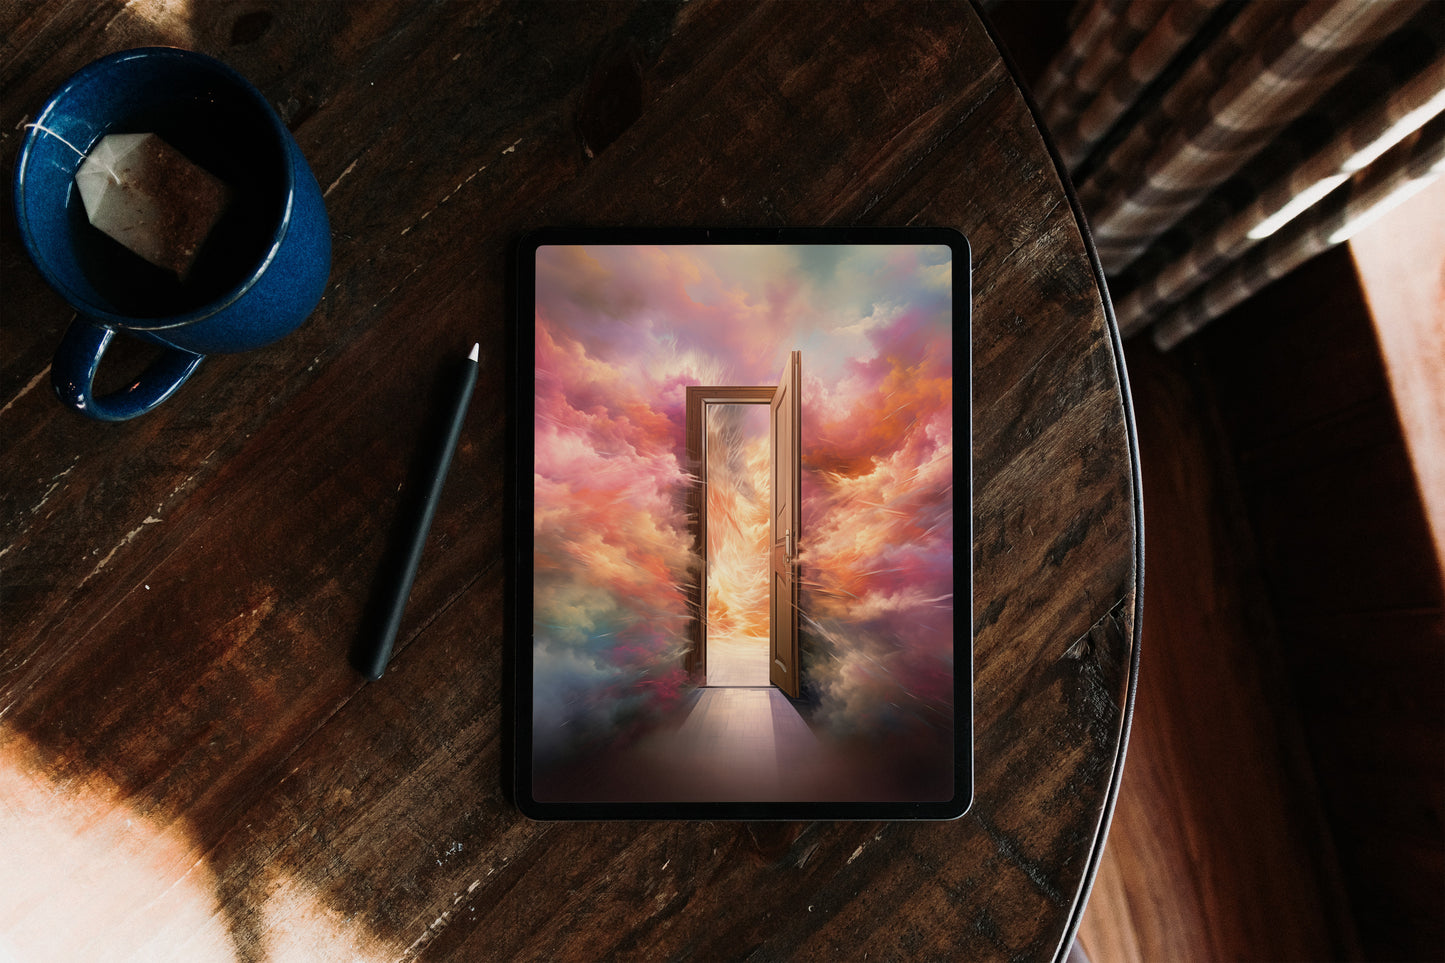 THE DOOR / Digital Wallpaper for Phone, Tablet, Computer